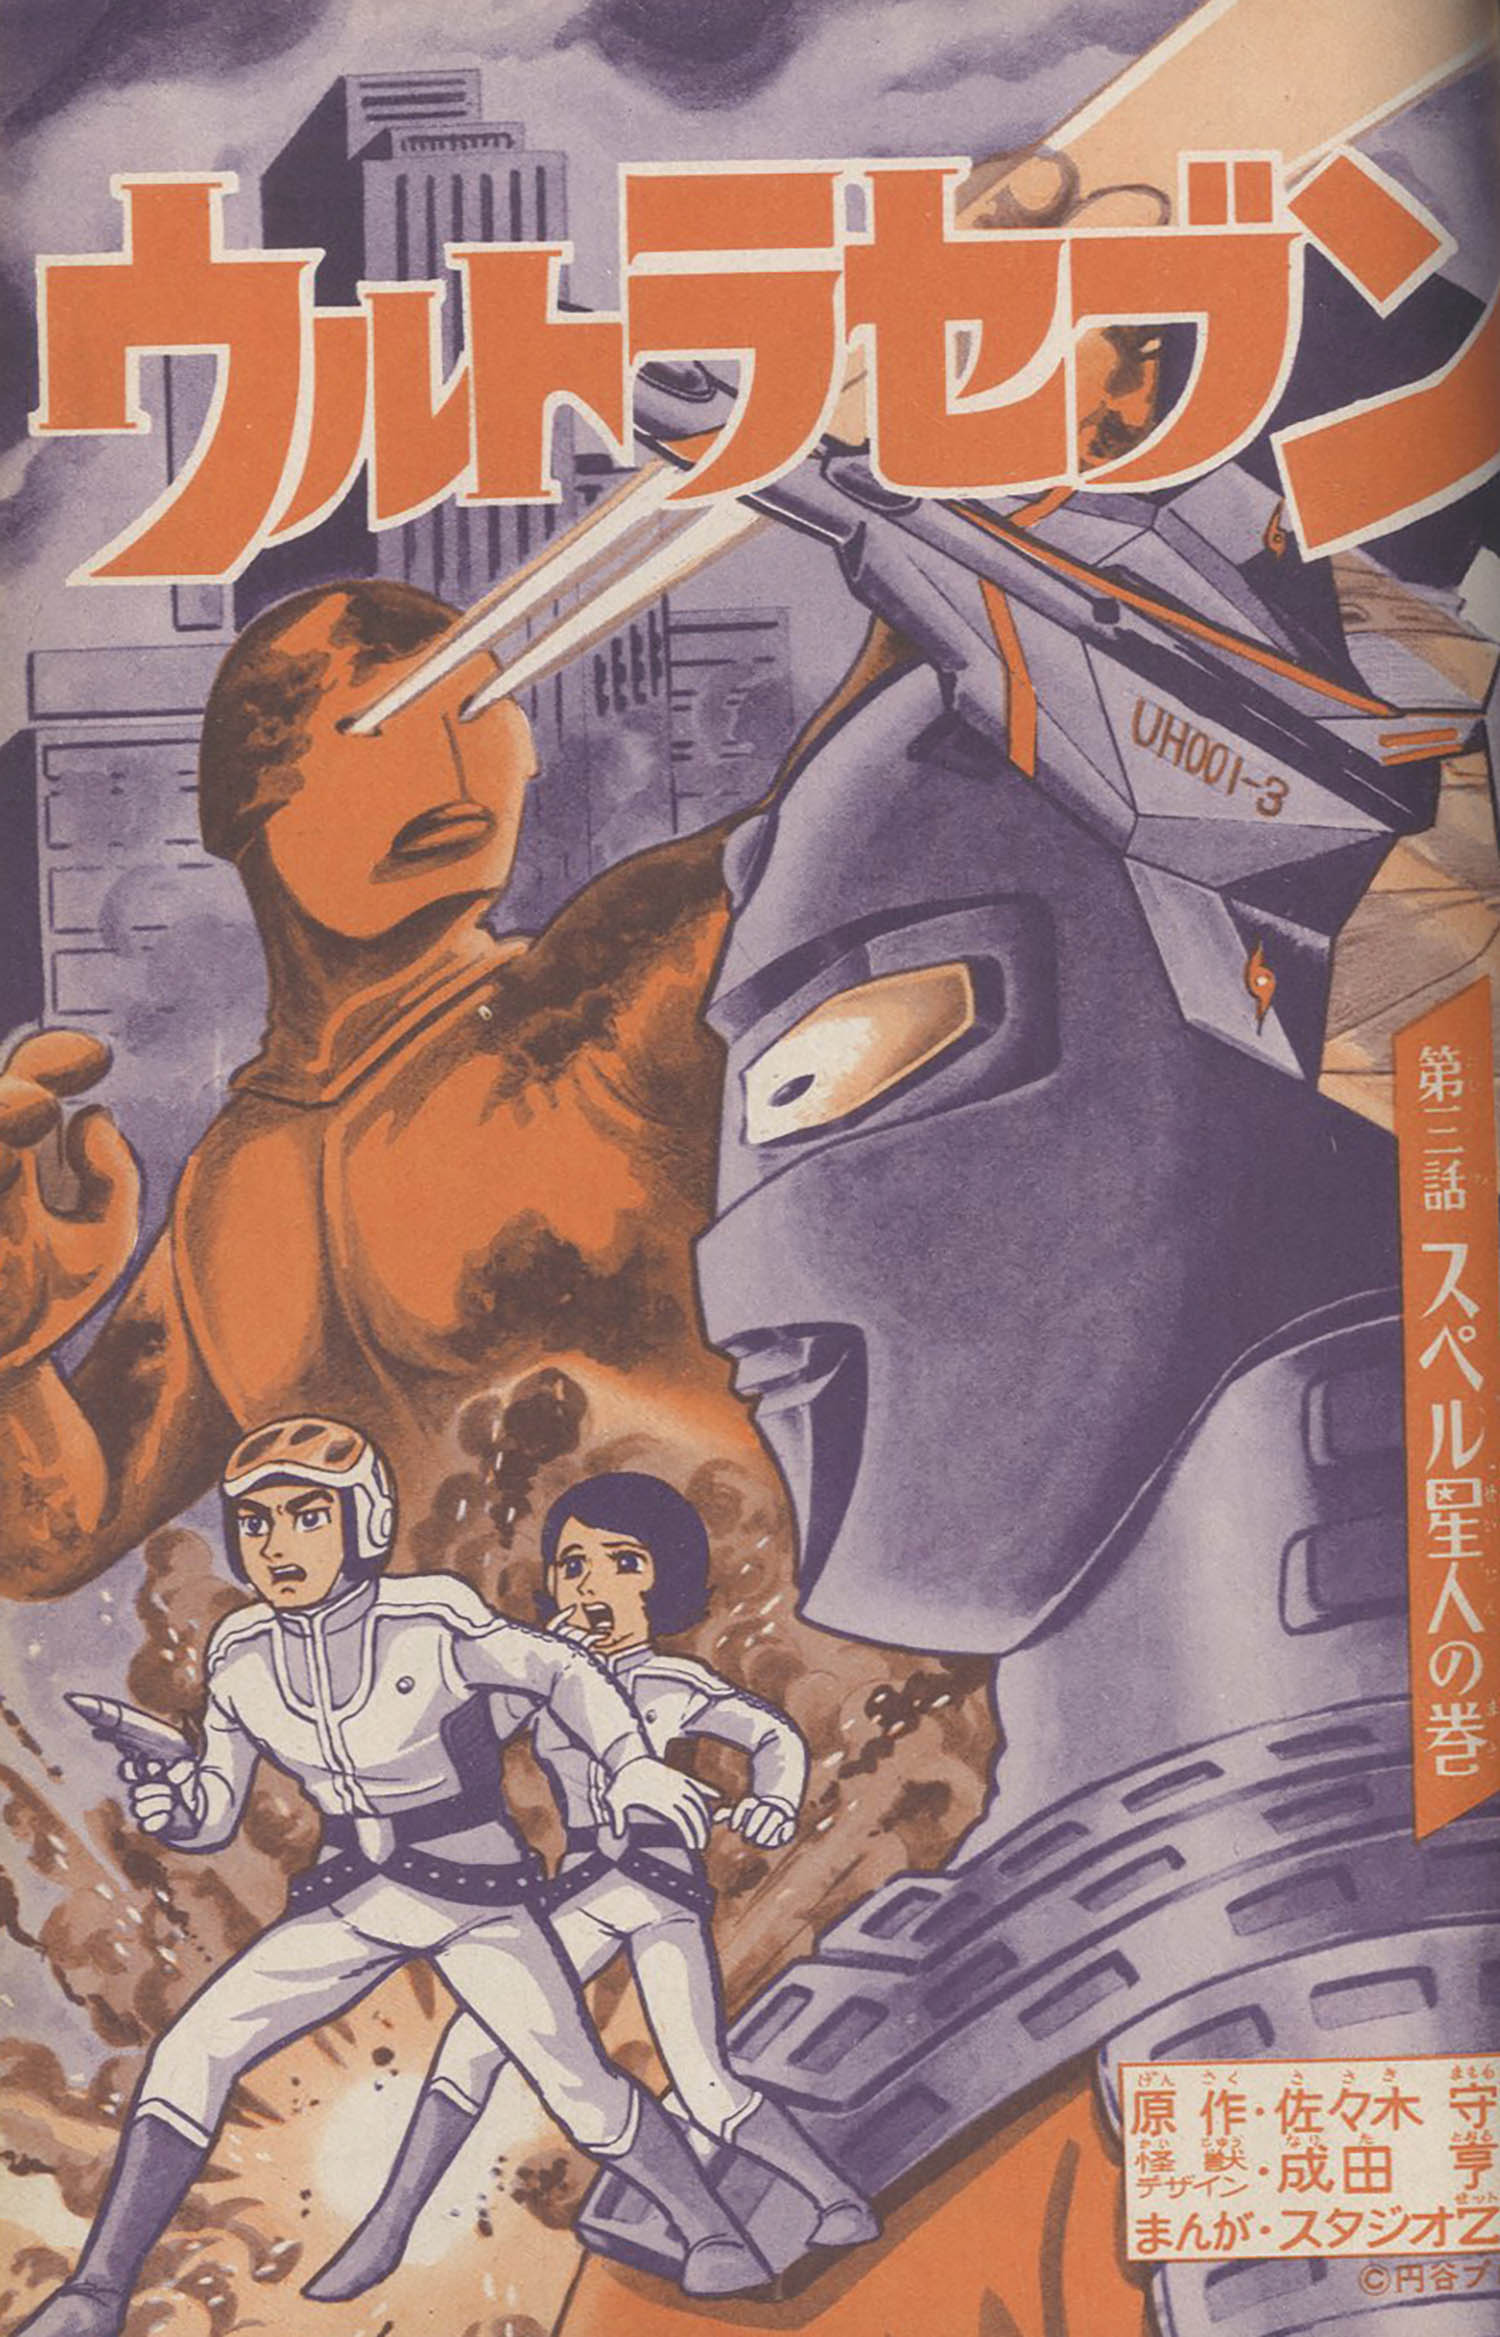 講談社テレビコミックス ウルトラセブン 全6巻セット